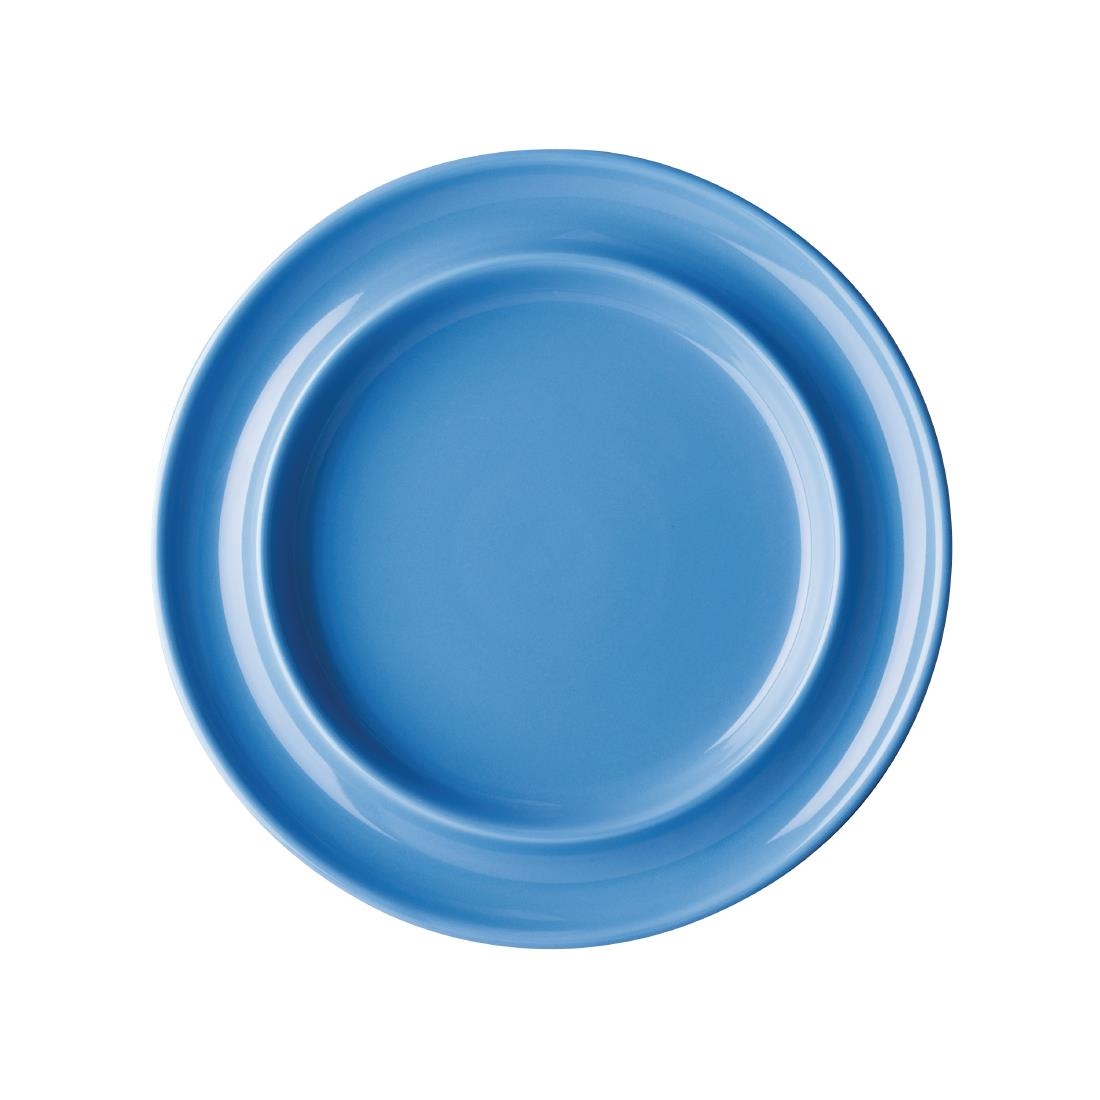 Olympia Kristallon Heritage Raised Rim Plates Blue 205mm (Pack of 4)